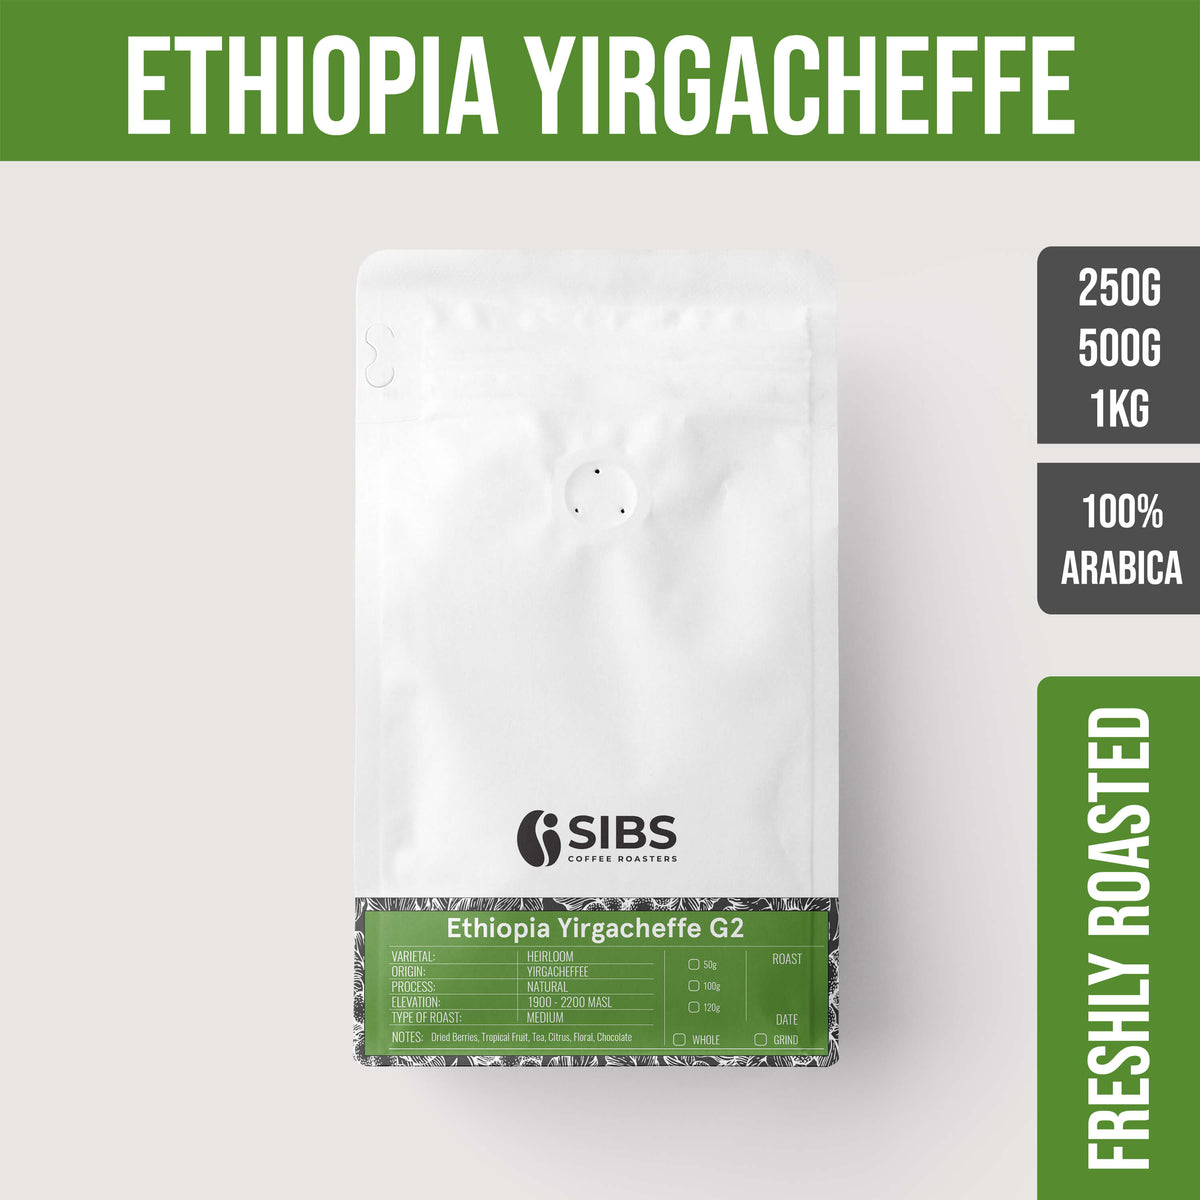 Ethiopia Yirgacheffe G2 (100% Arabica) - Freshly Roasted Coffee